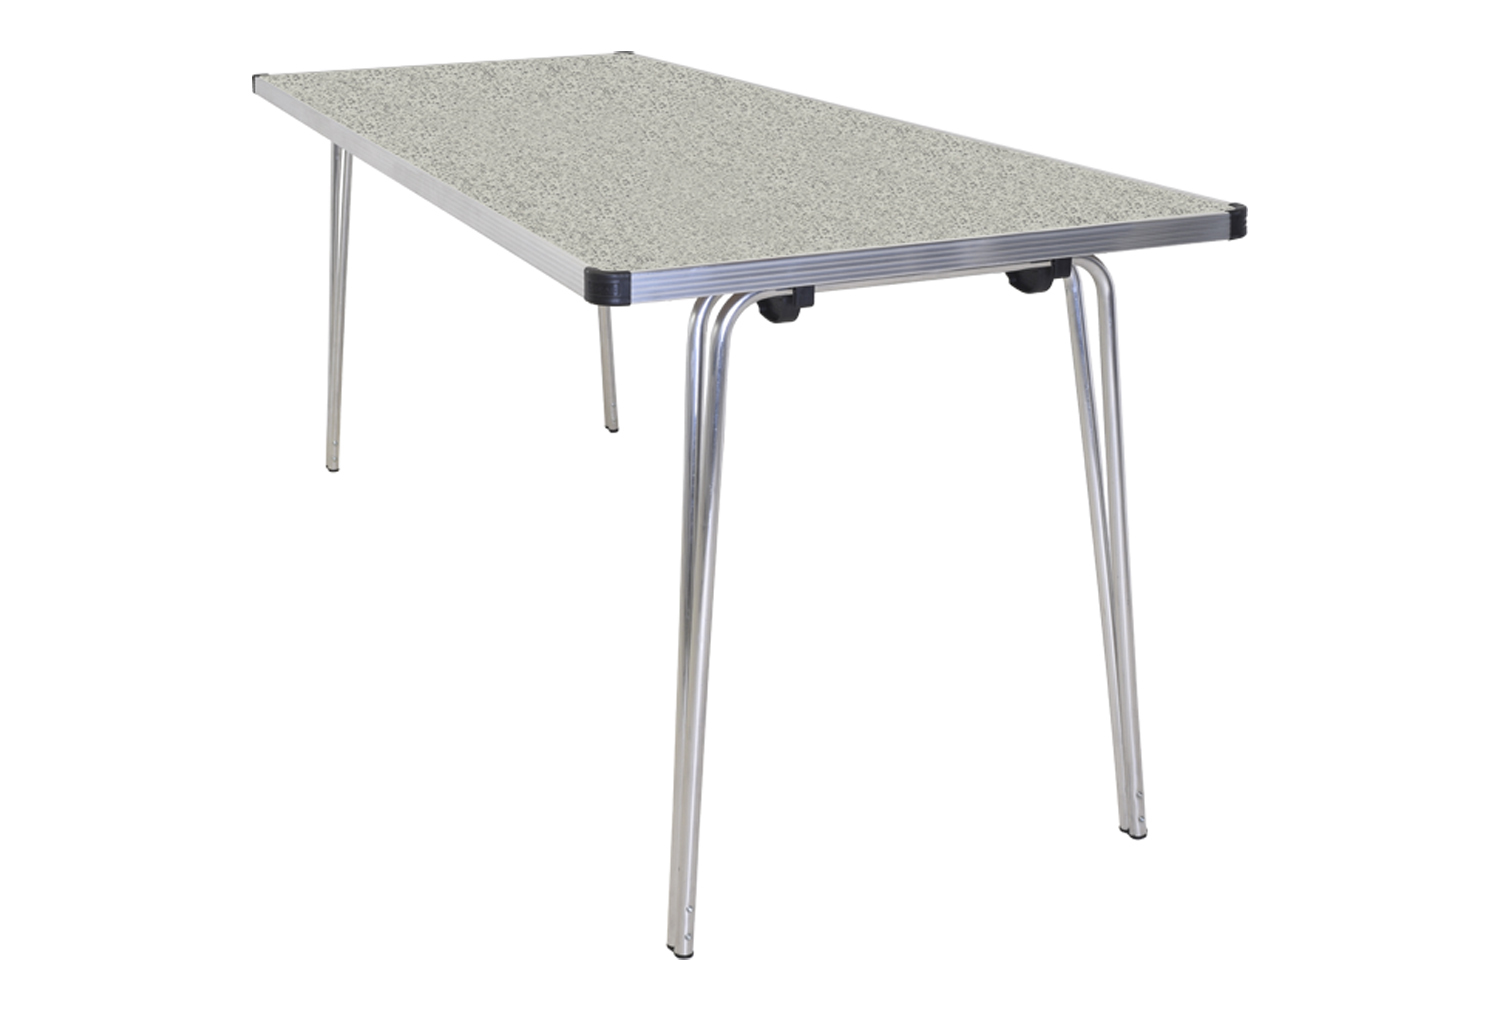 Gopak Contour Plus Folding Table, 122wx61d (cm), Snow Grit